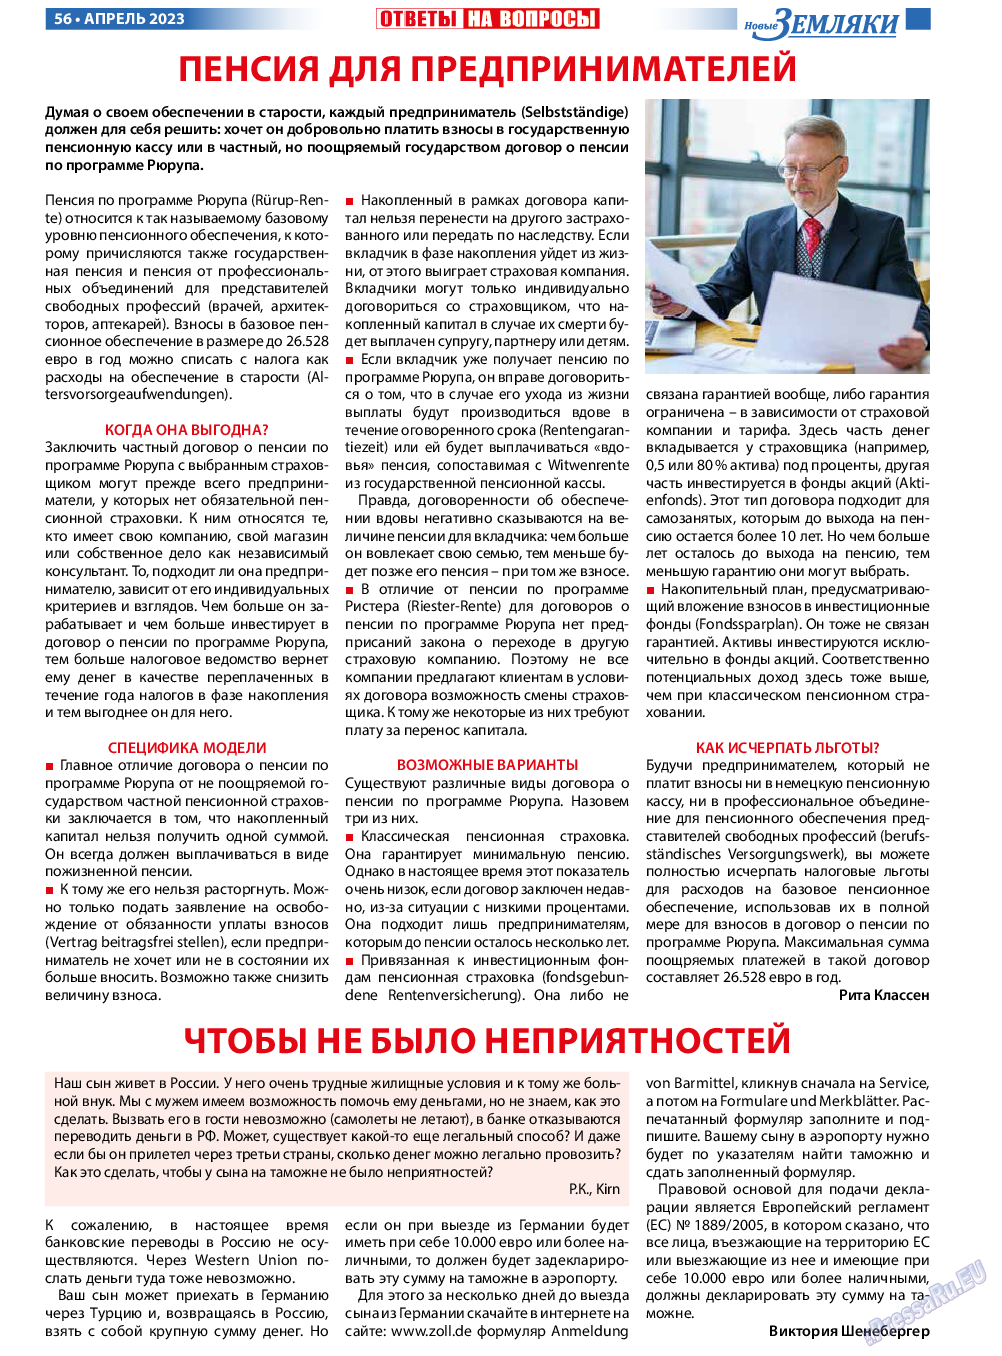 Новые Земляки, газета. 2023 №4 стр.56